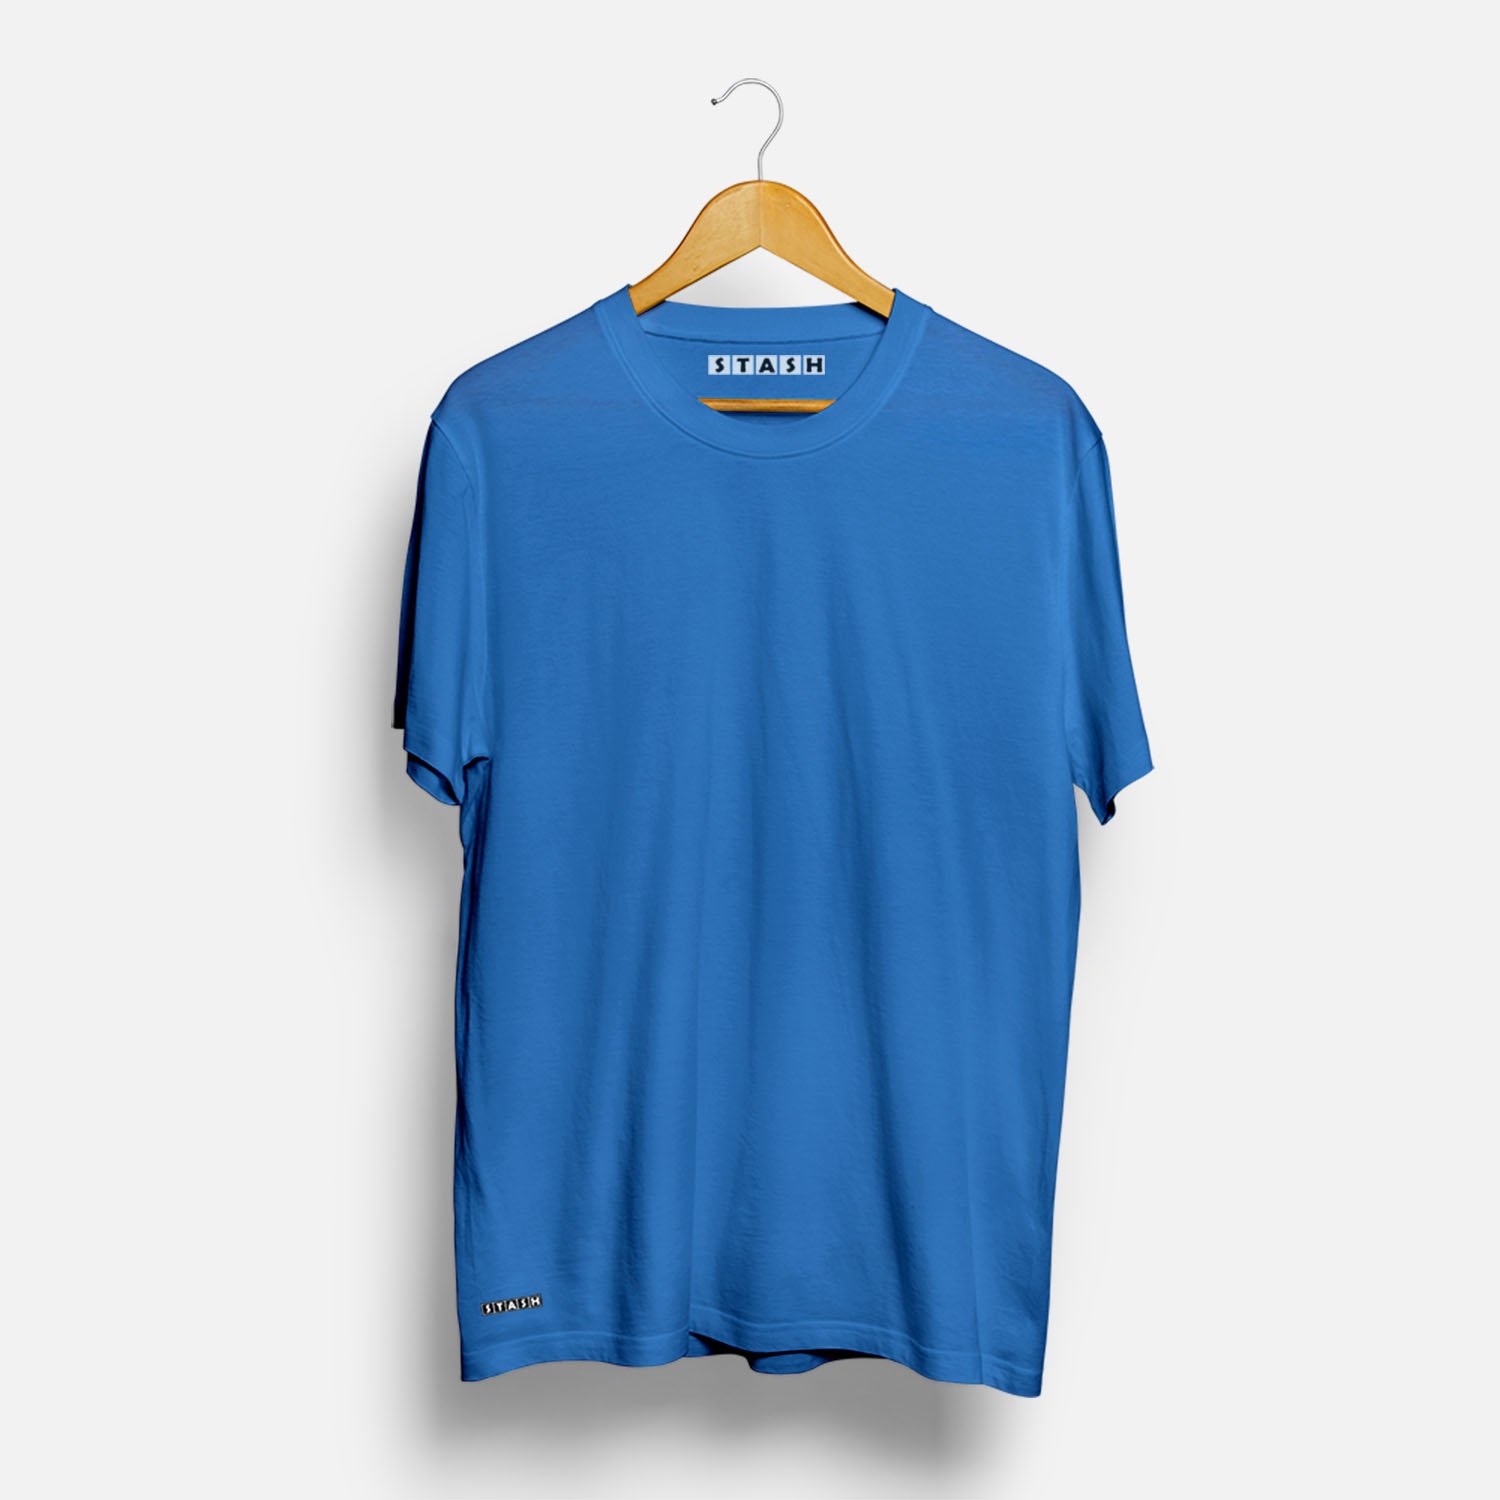 Solid Blue Unisex Plain Tshirt - Stash